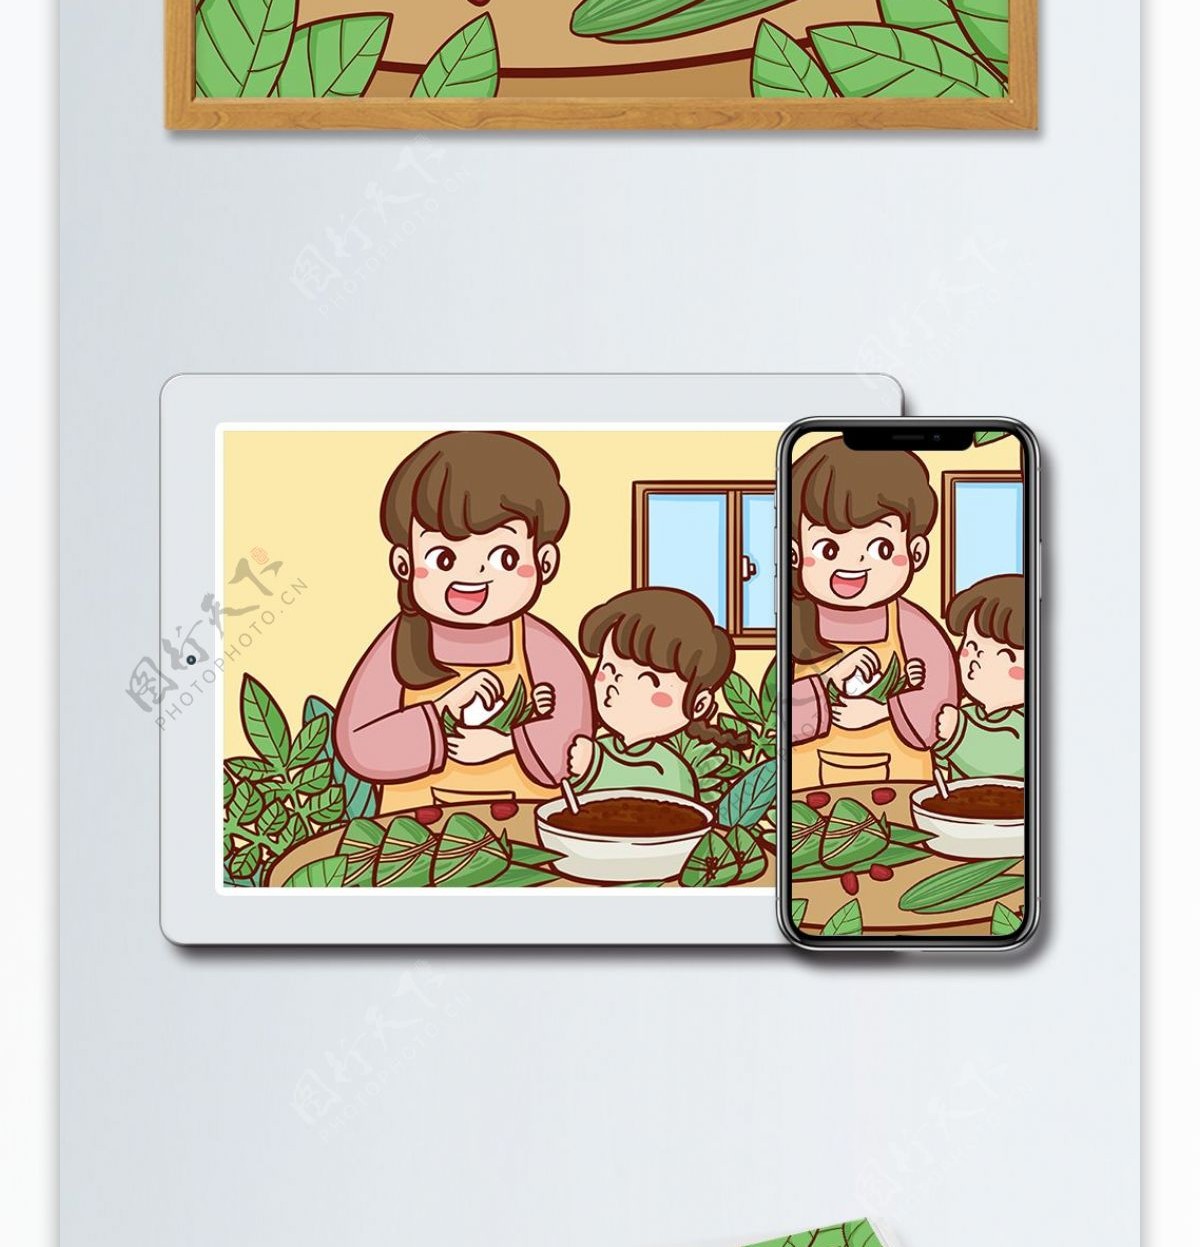 端午节传统节日妈妈教女儿包粽子手绘插画